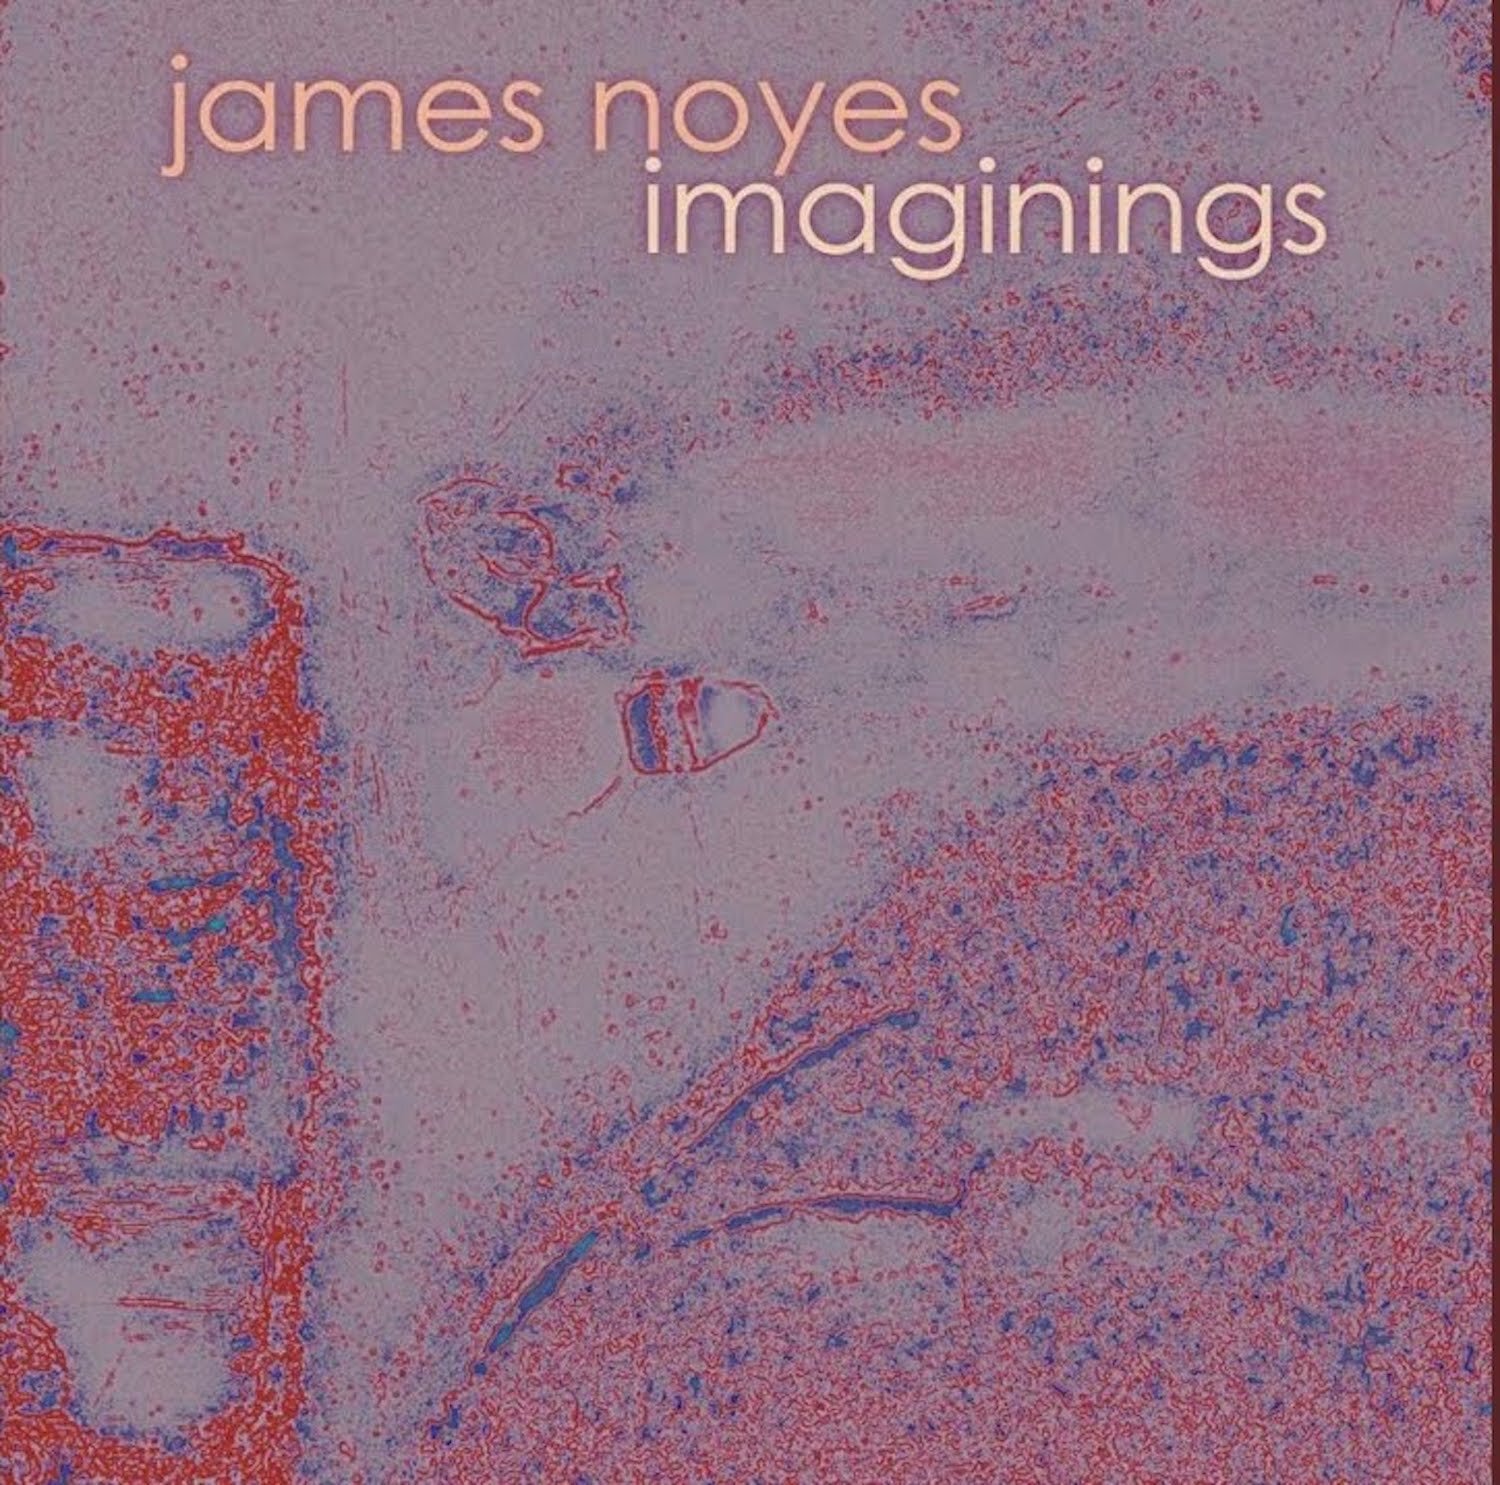 Imaginings CD Cover 09-13-21.jpg